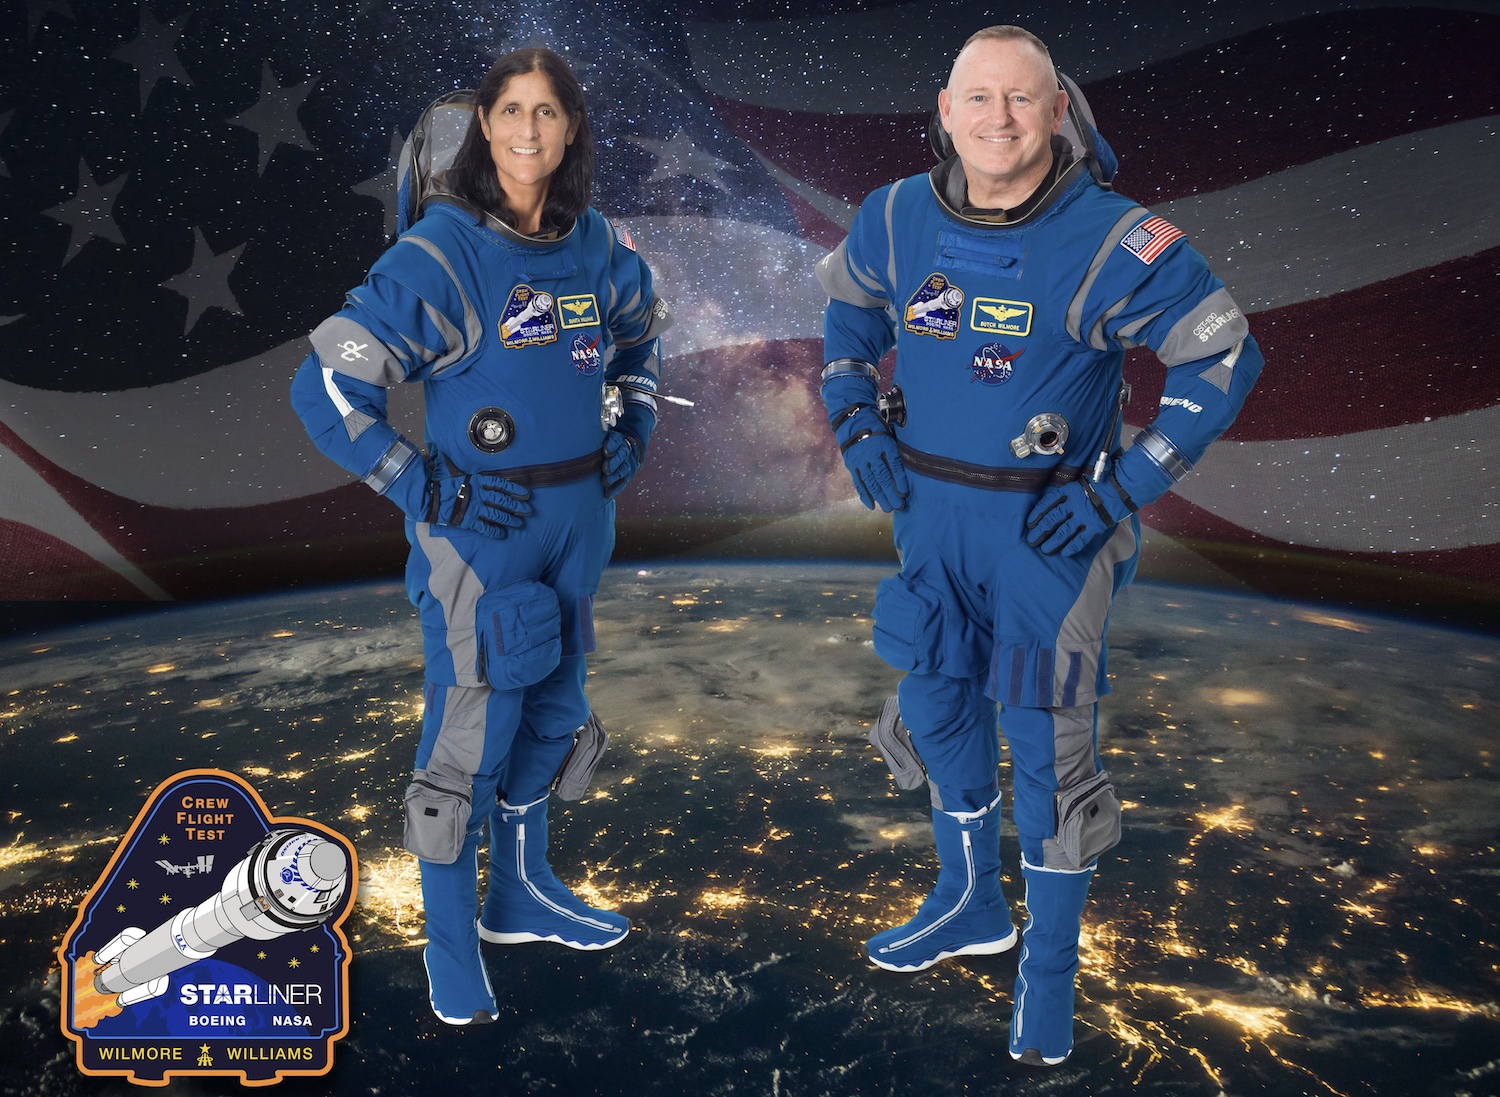 नासा के बोइंग क्रू फ़्लाइट टेस्ट के लिए आधिकारिक क्रू चित्र। बाईं ओर सुनी विलियम्स हैं, जो पायलट के रूप में काम करेंगी, और दाईं ओर बैरी "बुच" विल्मोर, अंतरिक्ष यान कमांडर हैं।